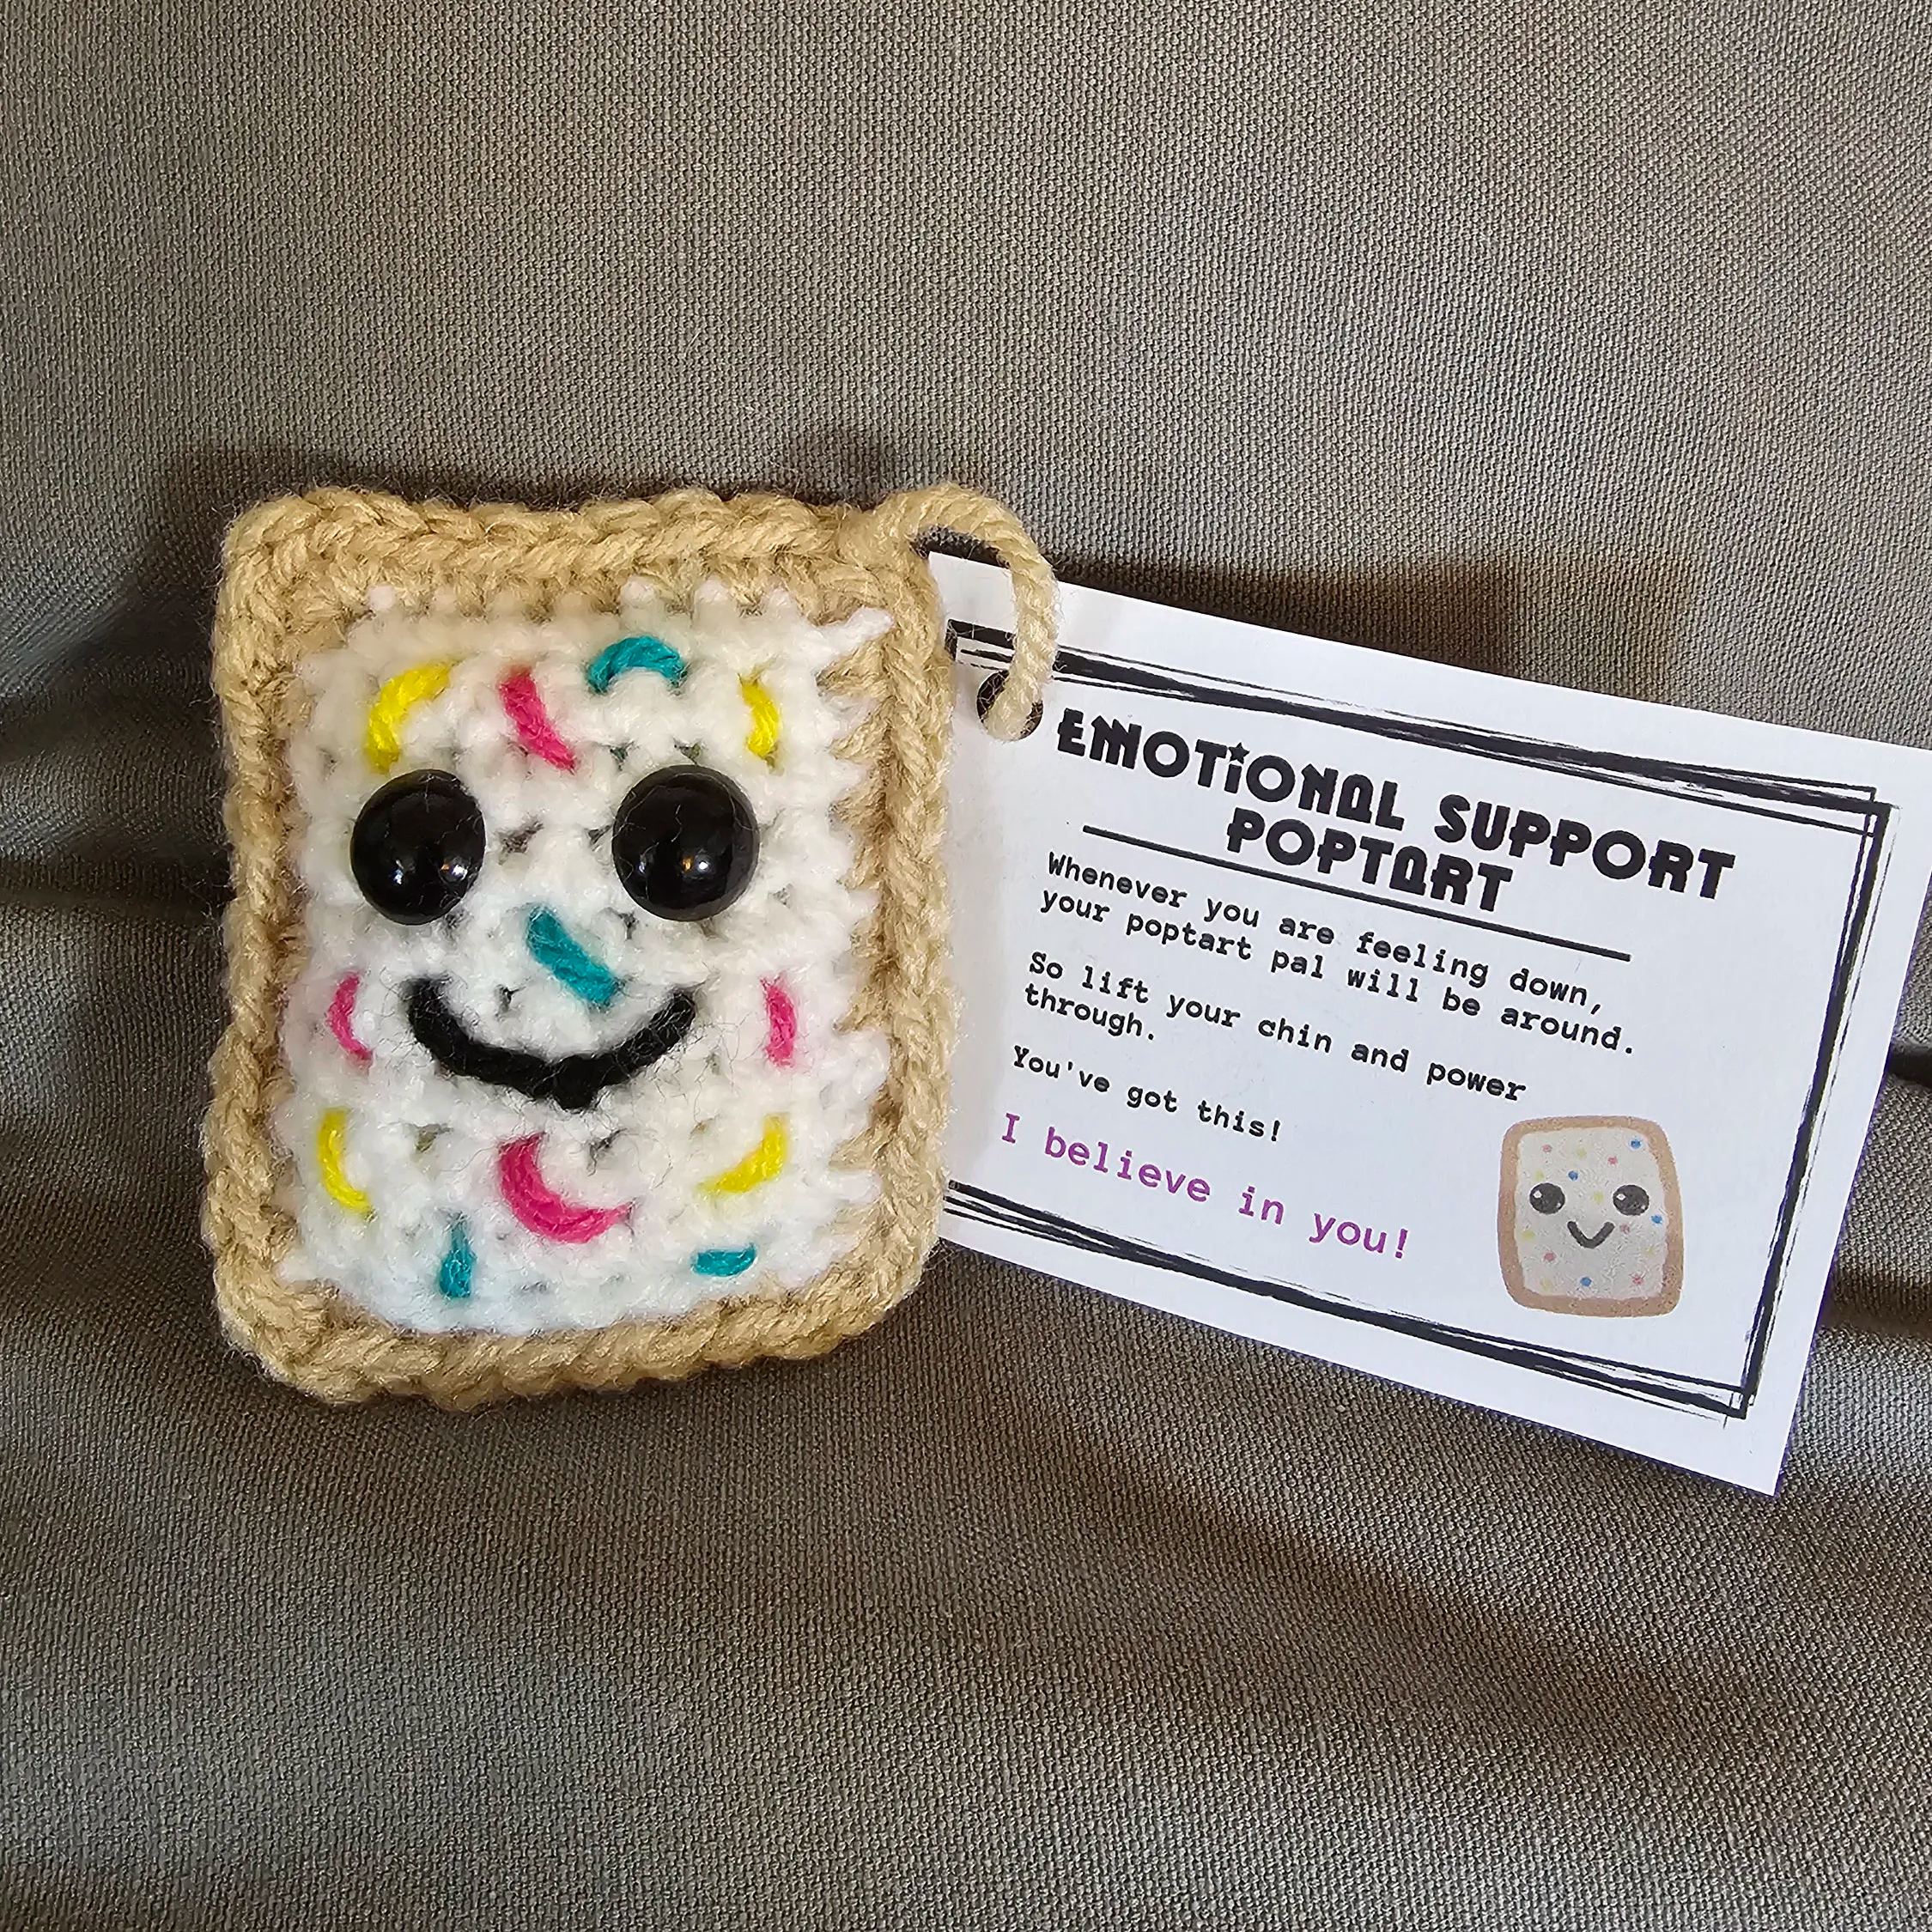 Crochet Keychain Emotional Support PopTart